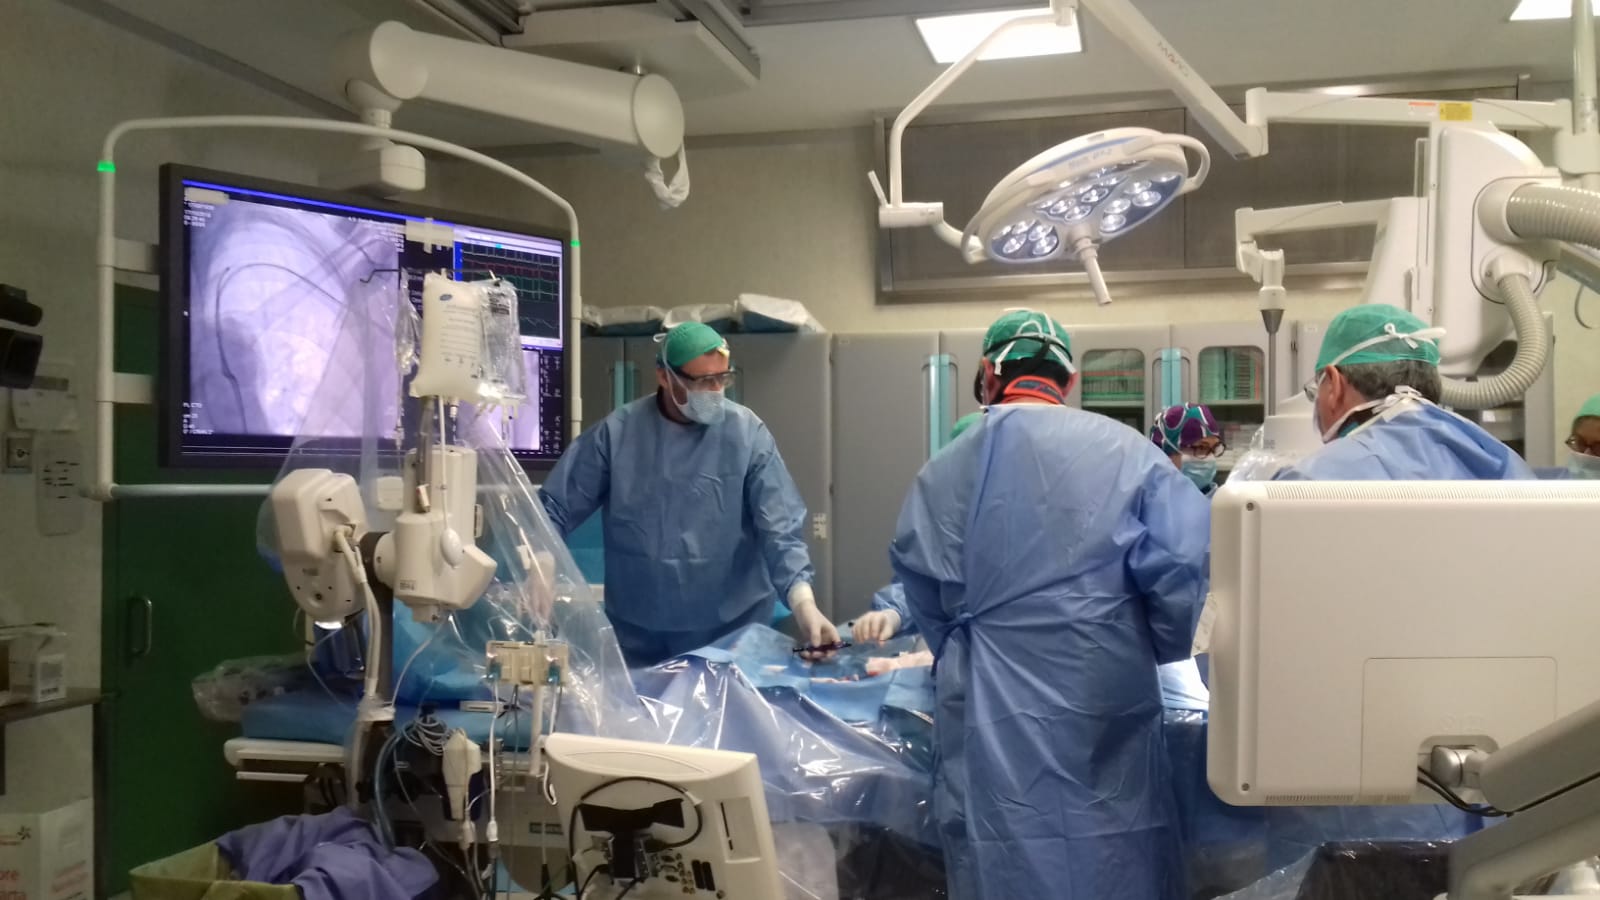 Valvola aortica: Poma tra i primi centri in Italia per gli interventi mini-invasivi